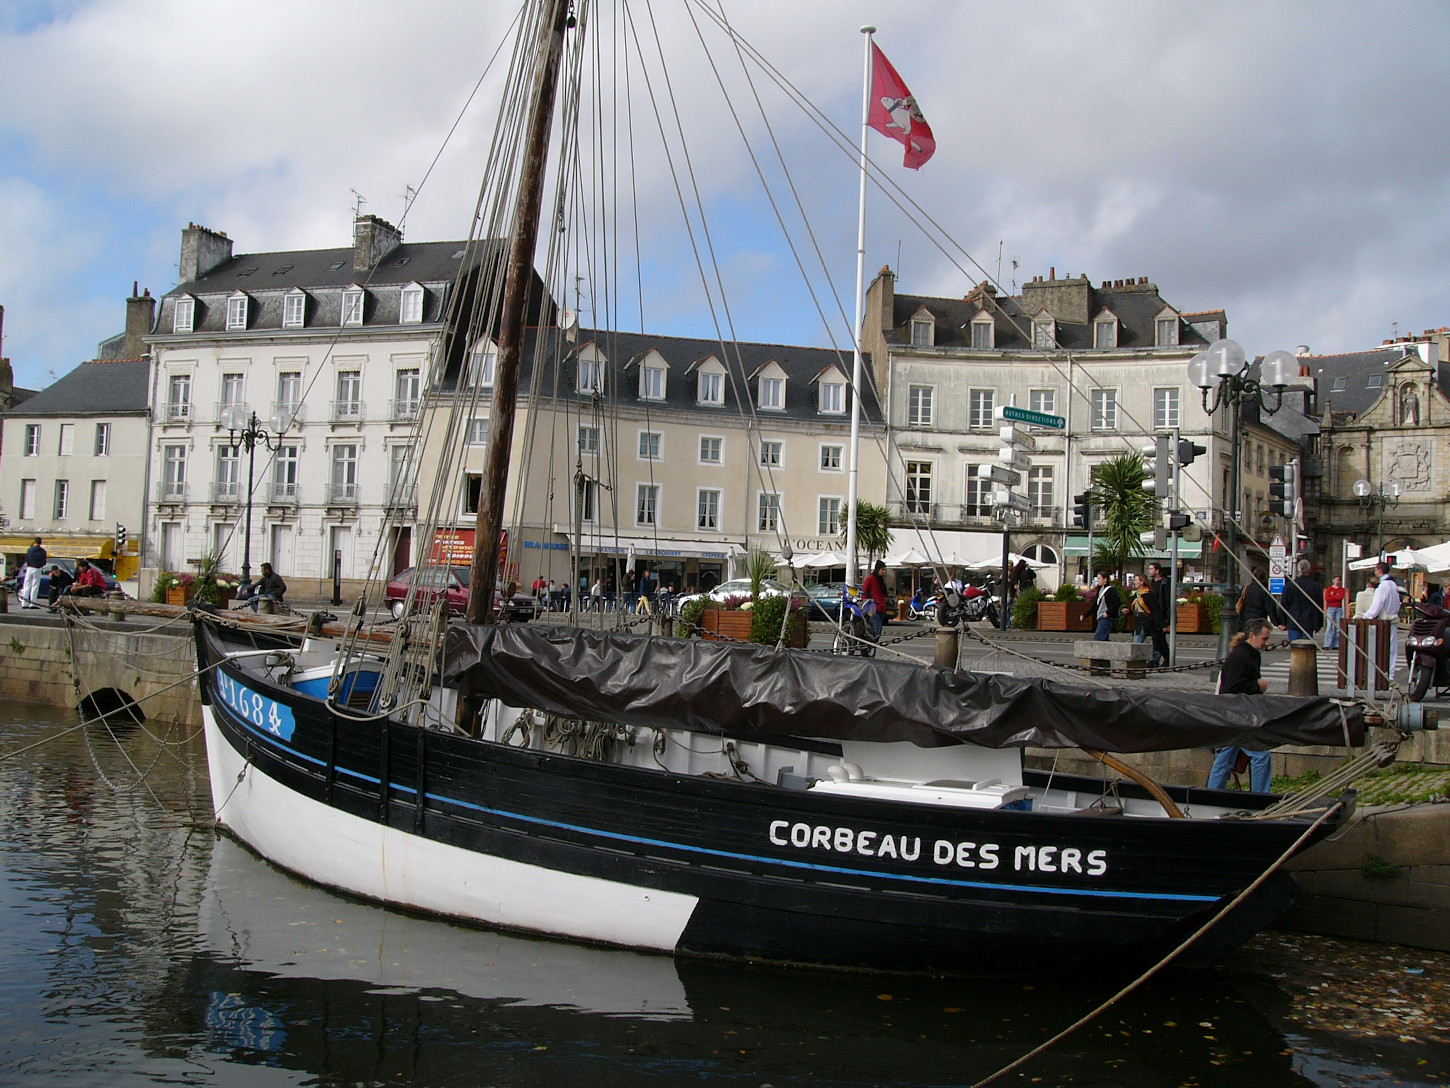 le Corbeau des mers, aujourd'hui propriété du Musée de Saint-Marcel, dans le port de Vannes. Wikicommons.